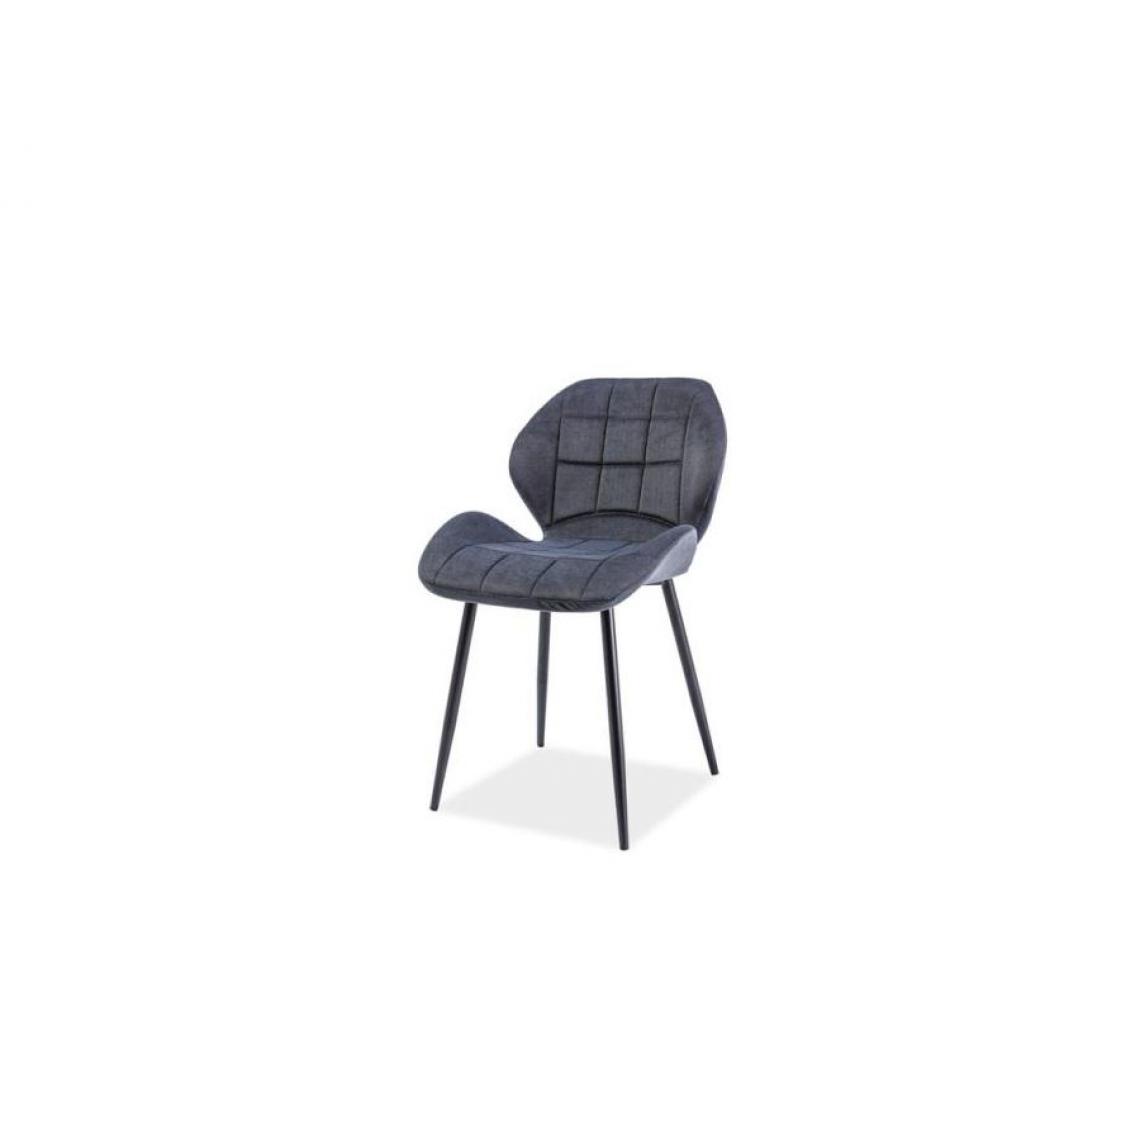 Hucoco - AKASIA | Chaise rembourré style loft | Dimensions 81x51x39cm | Rembourrage en tissu | Chaise salle à manger salon bureau - Gris - Chaises